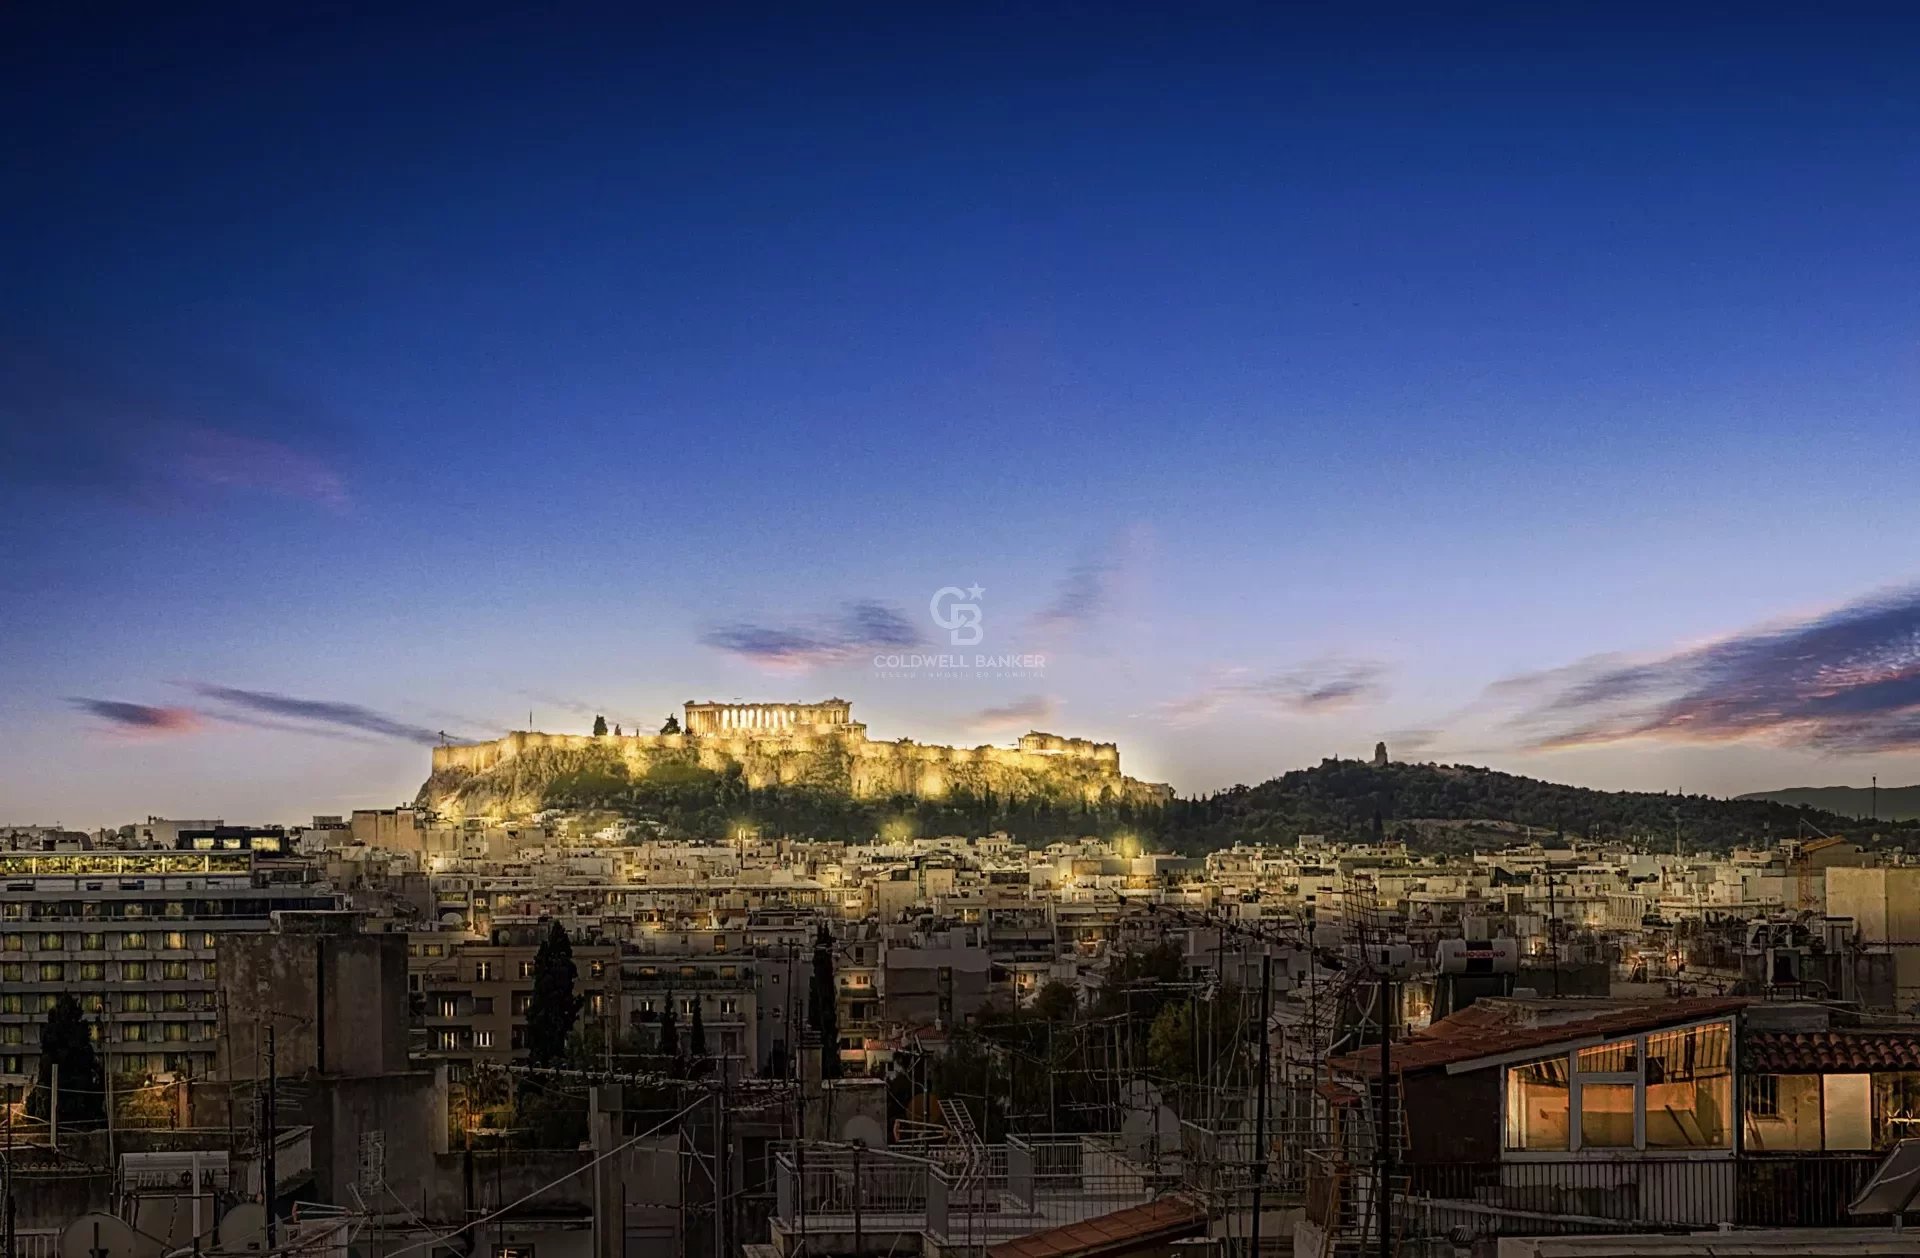 Vente - Duplex Terrasse et Roof Top - Vue 360 Panoramique Acropole - Athènes - Grèce